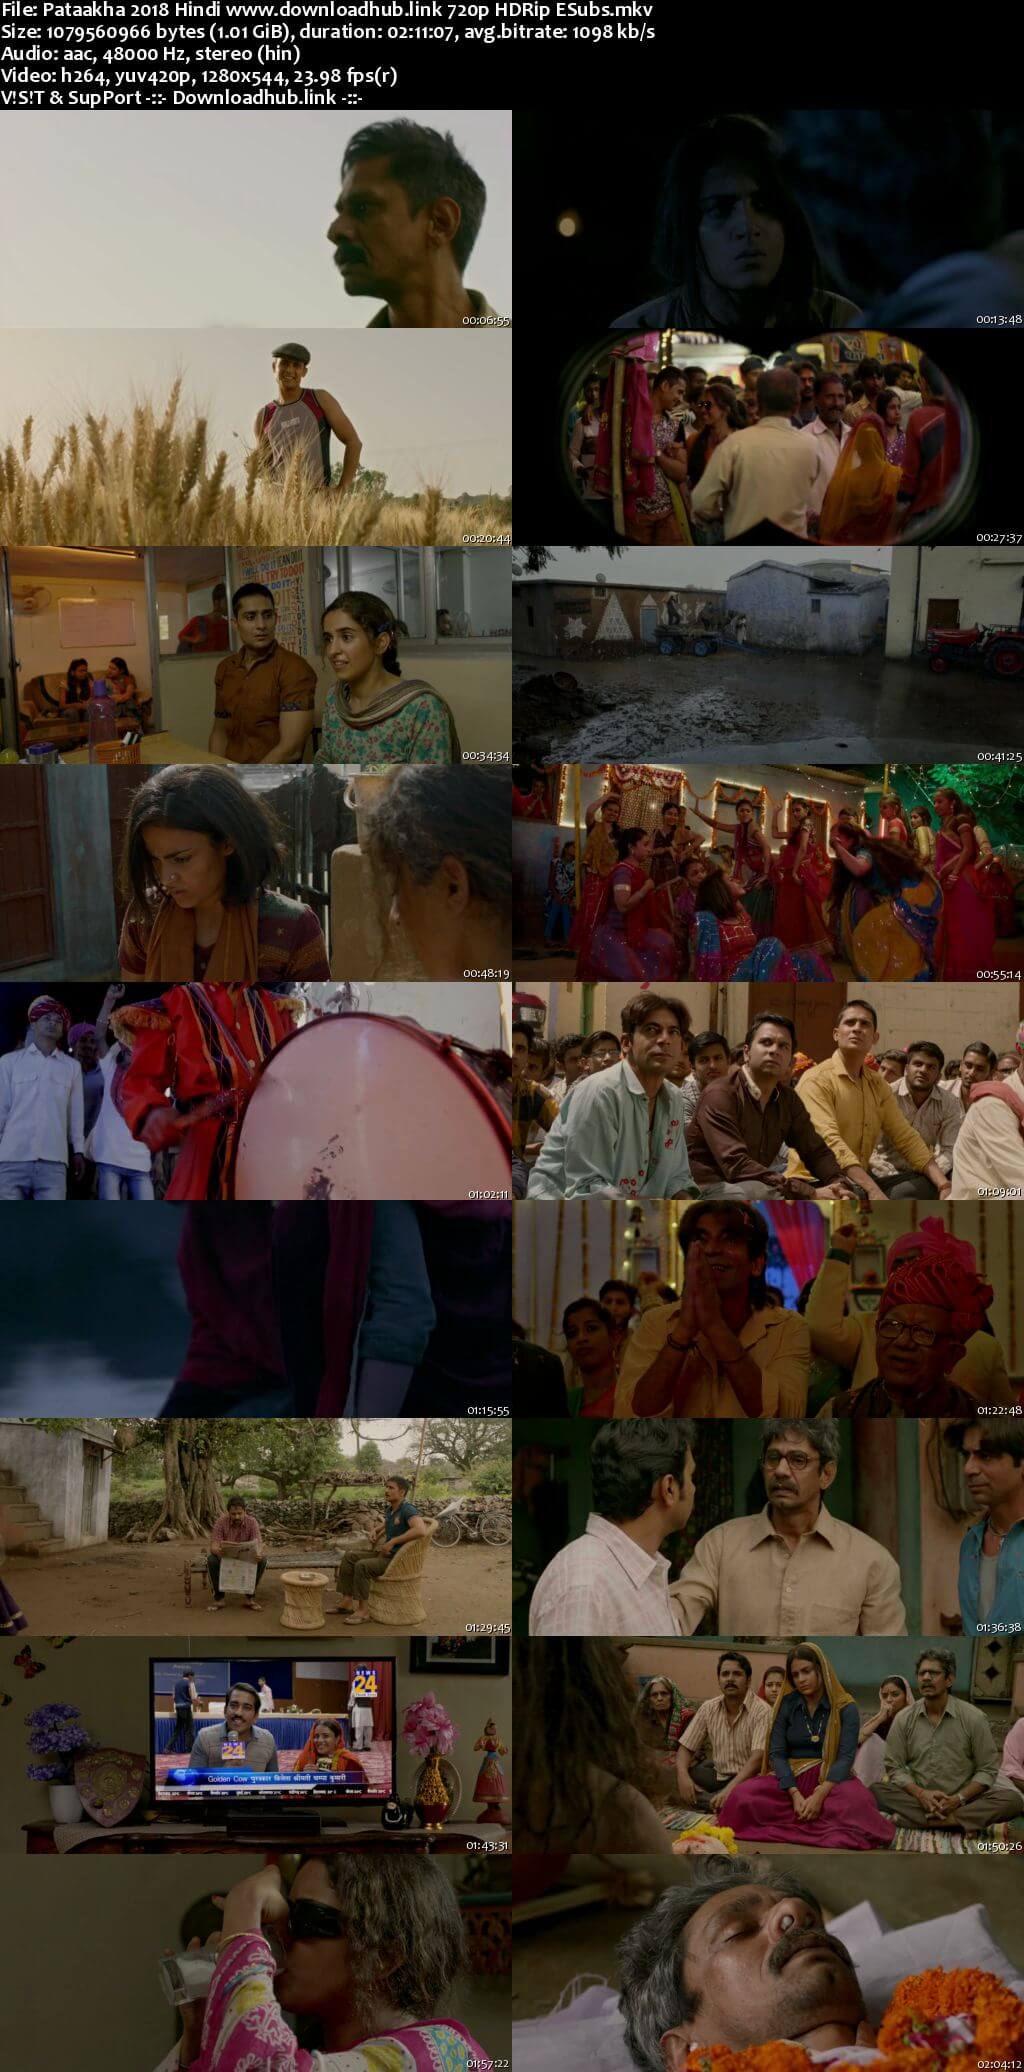 Pataakha 2018 Hindi 720p HDRip ESubs